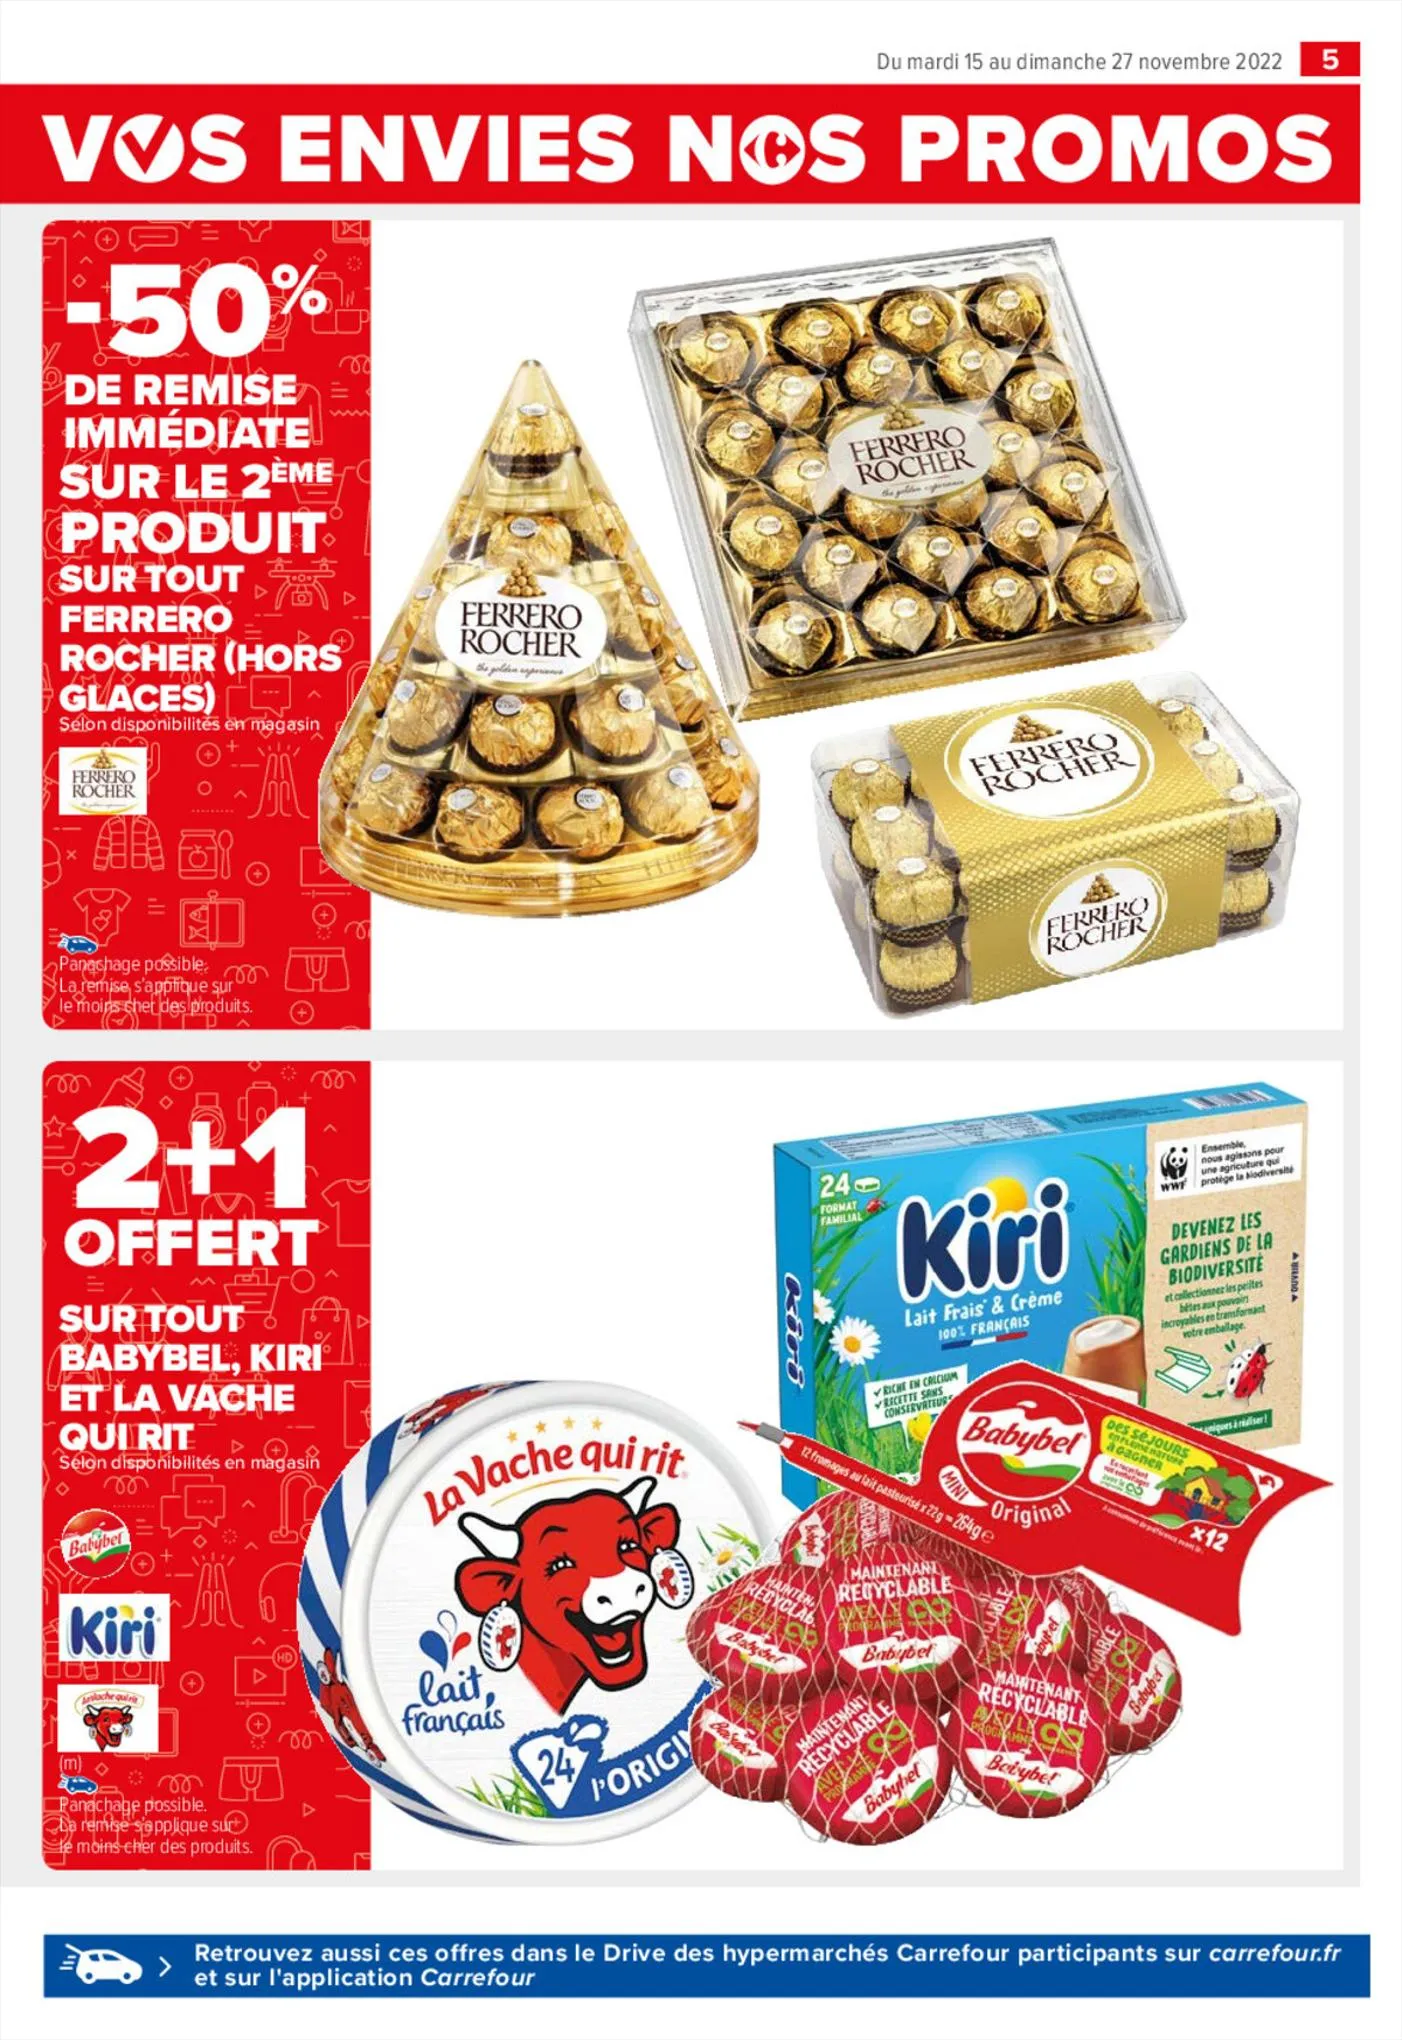 Catalogue Vos envies nos promos Ferrero, page 00007